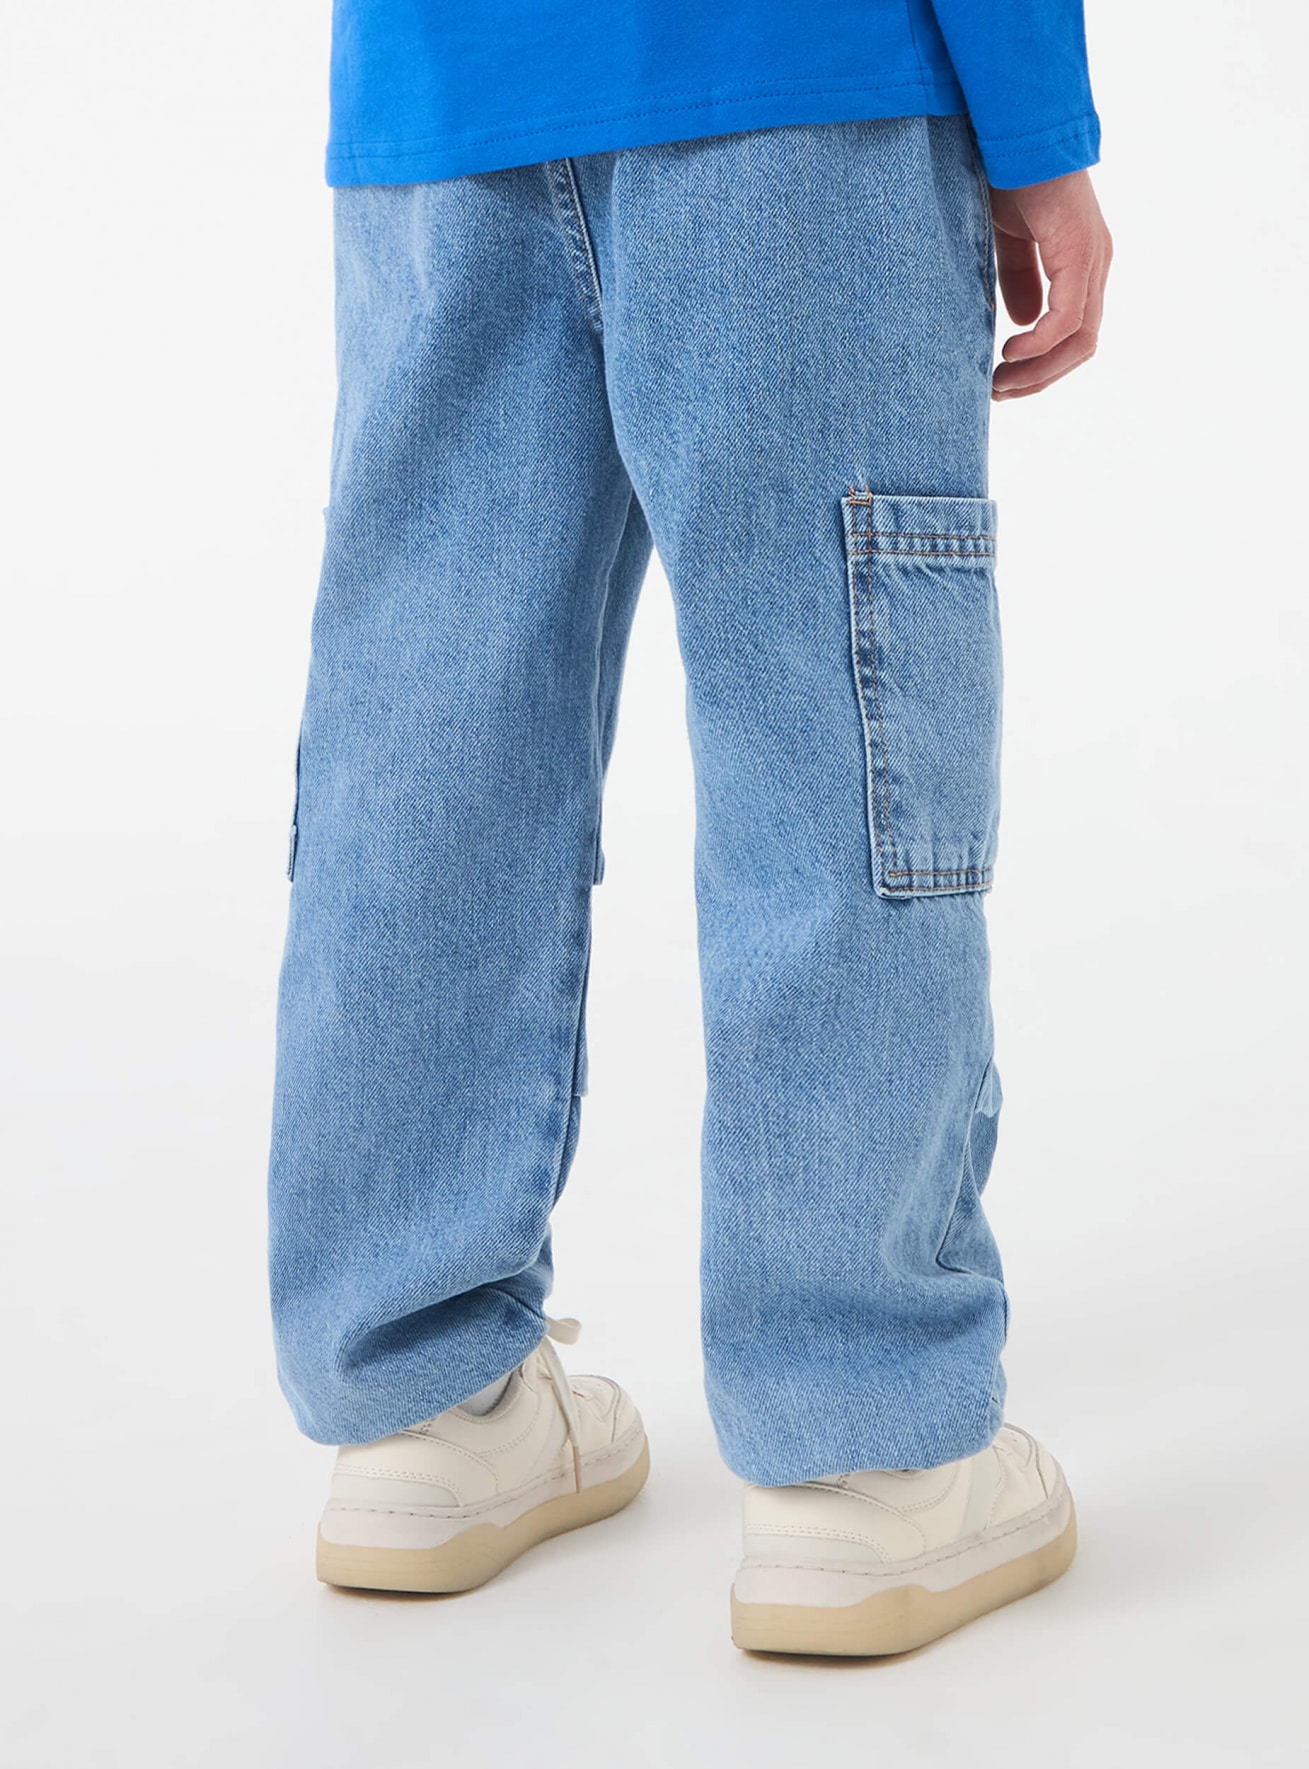 Jeans largos nino Terranova